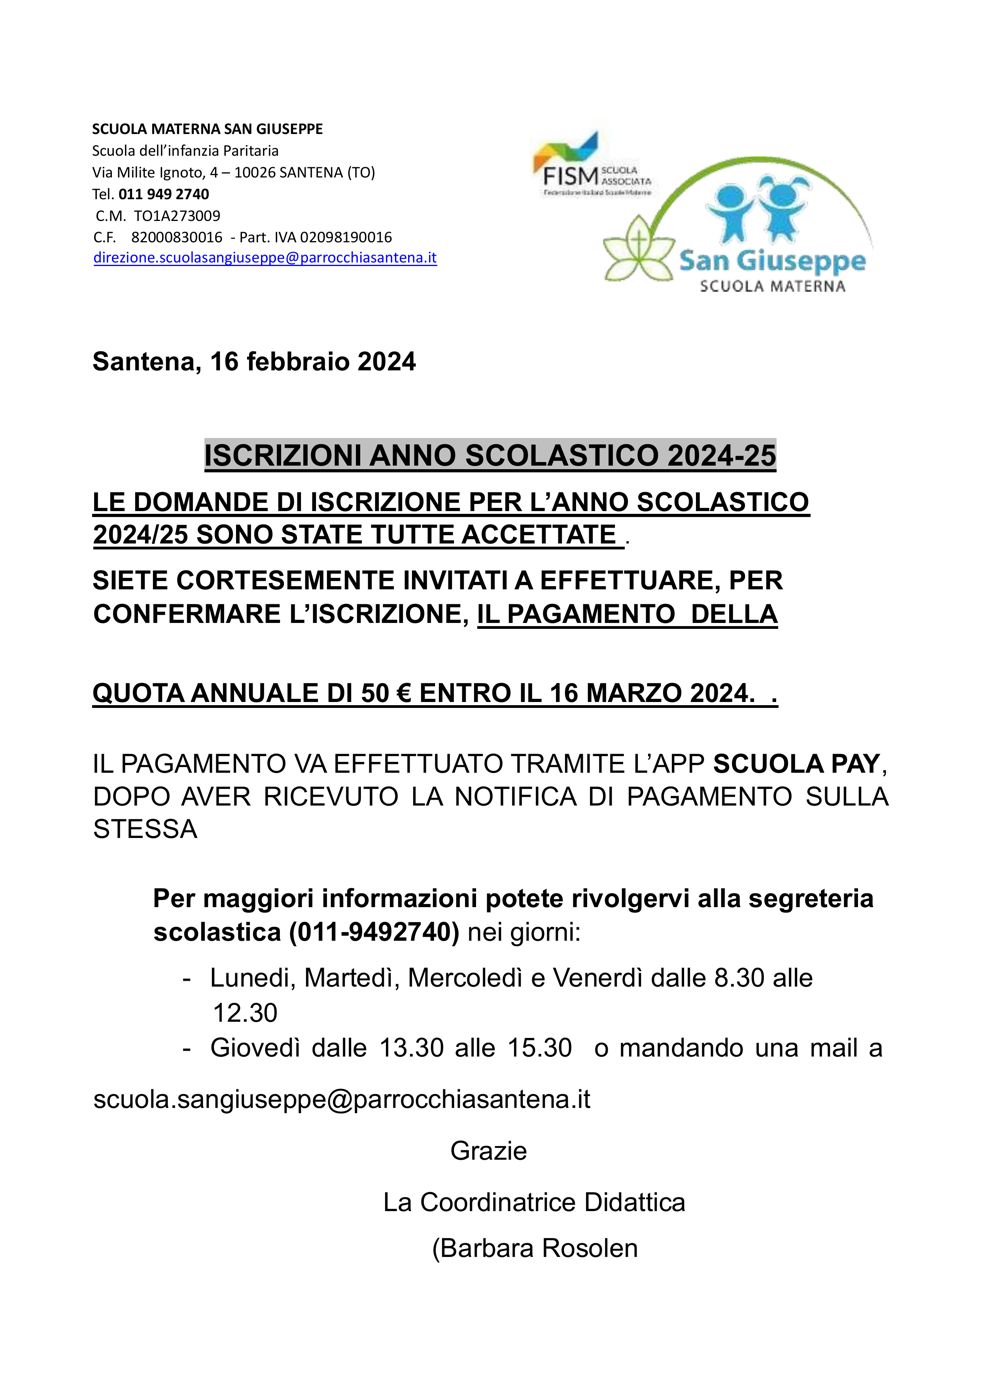 Locandina accettazione iscrizioni scuola materna San Giuseppe 2024-25